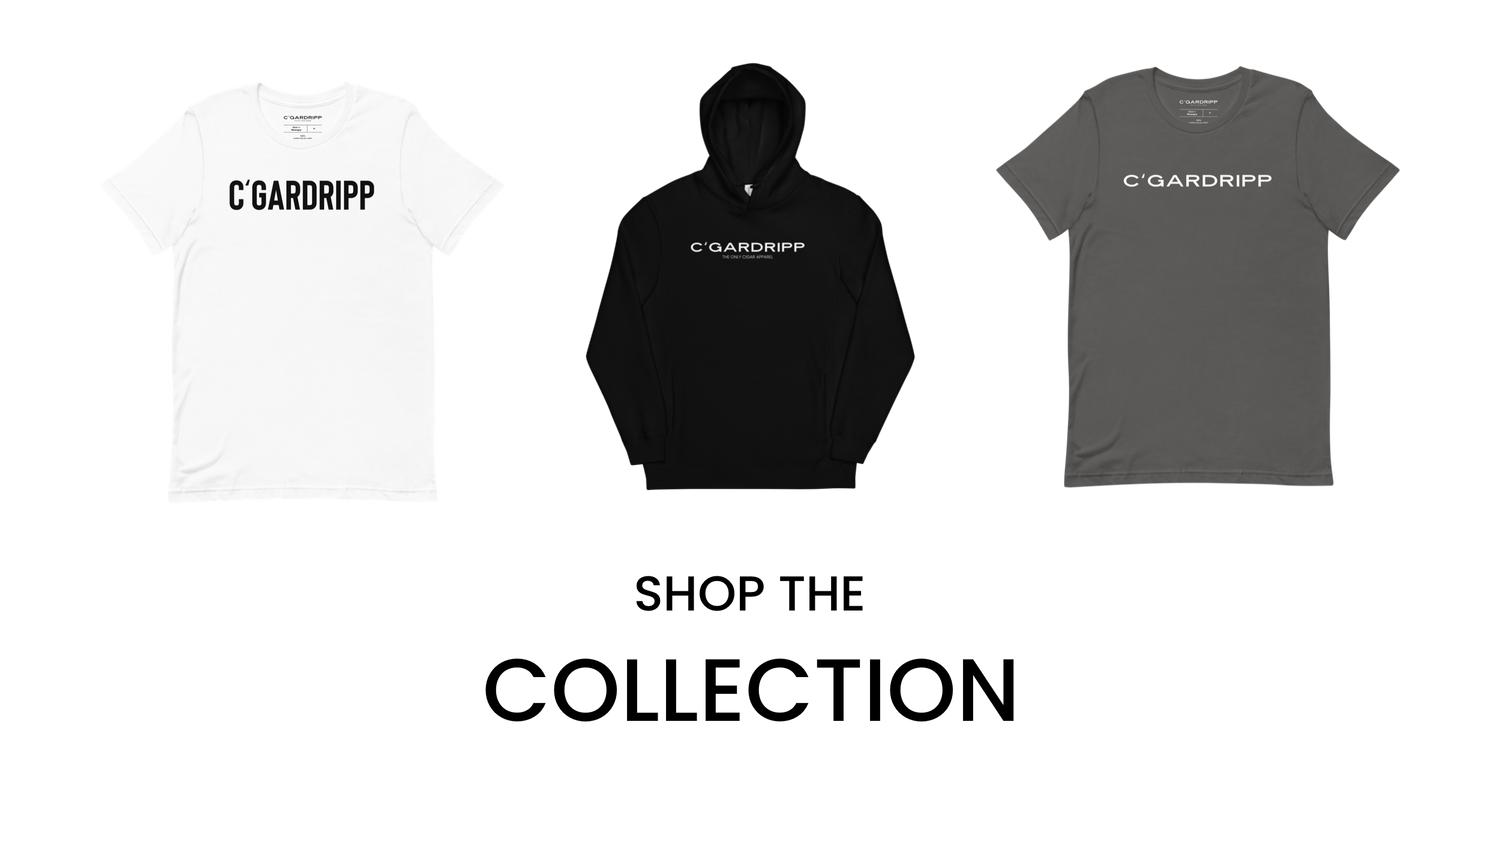 Shop the C’GarDripp collection